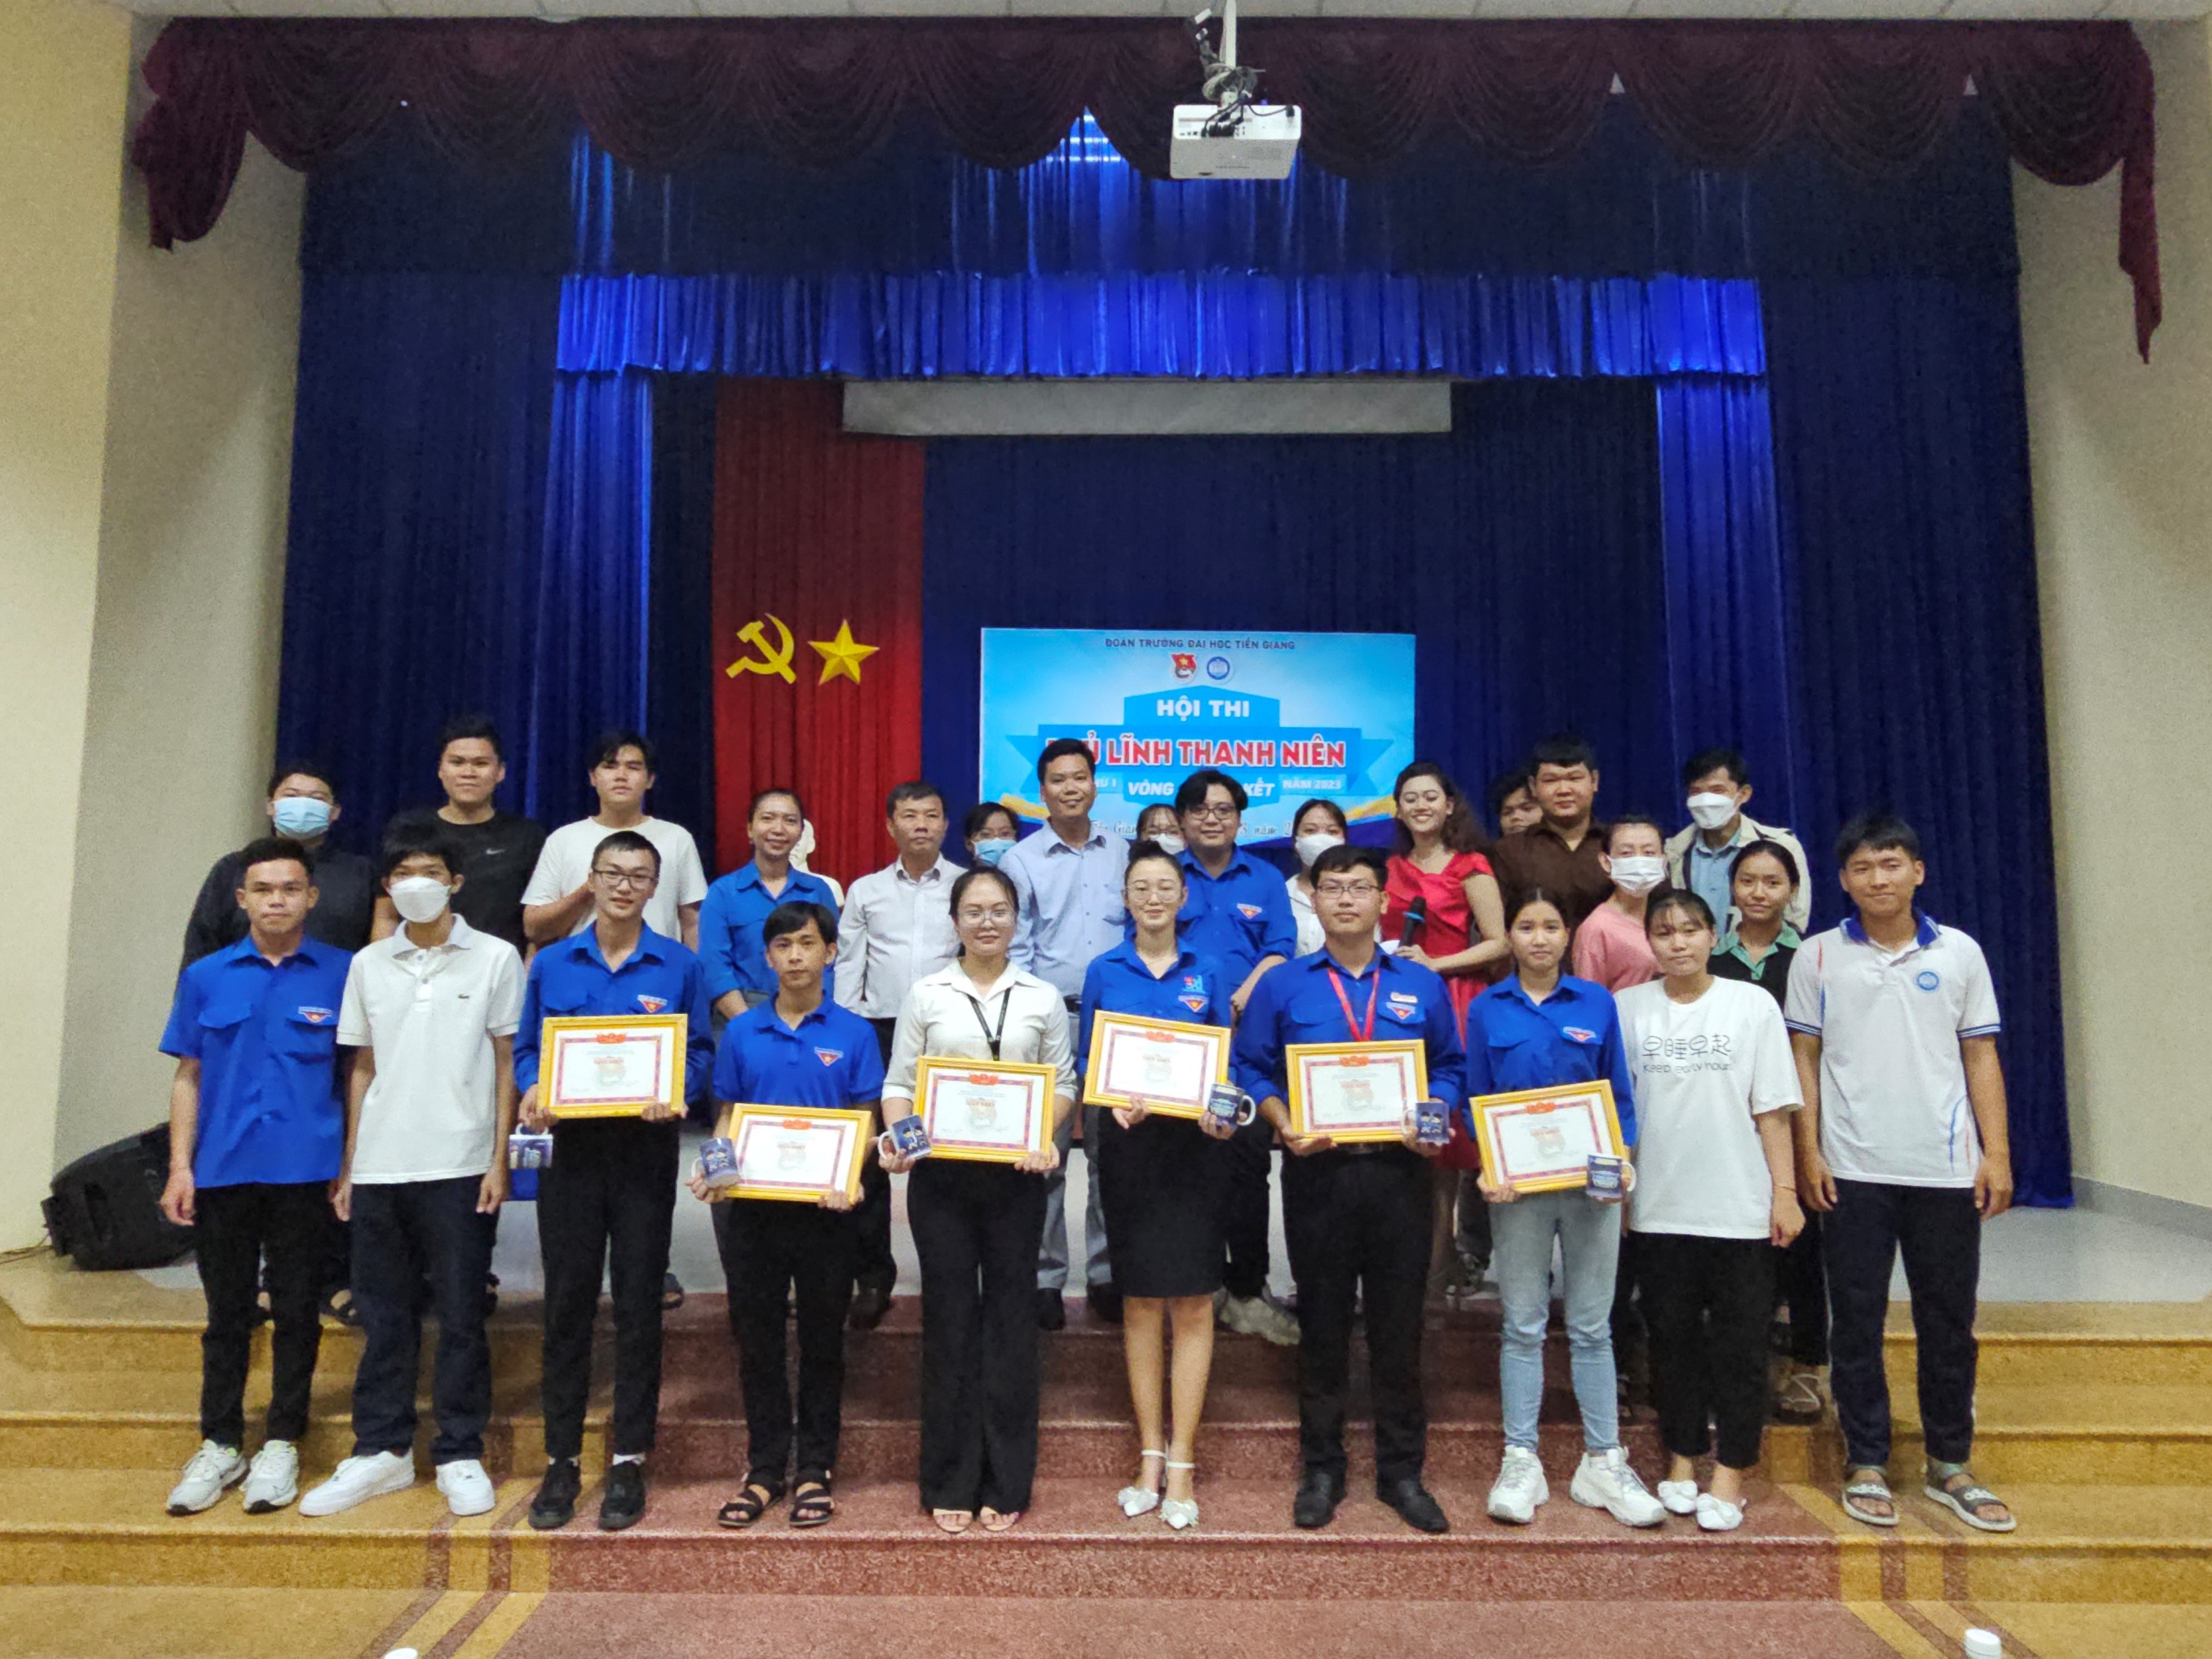 Nguyễn Thị Kim Cương – Quán quân đầu tiên của Hội thi  Thủ lĩnh thanh niên Trường Đại học Tiền Giang